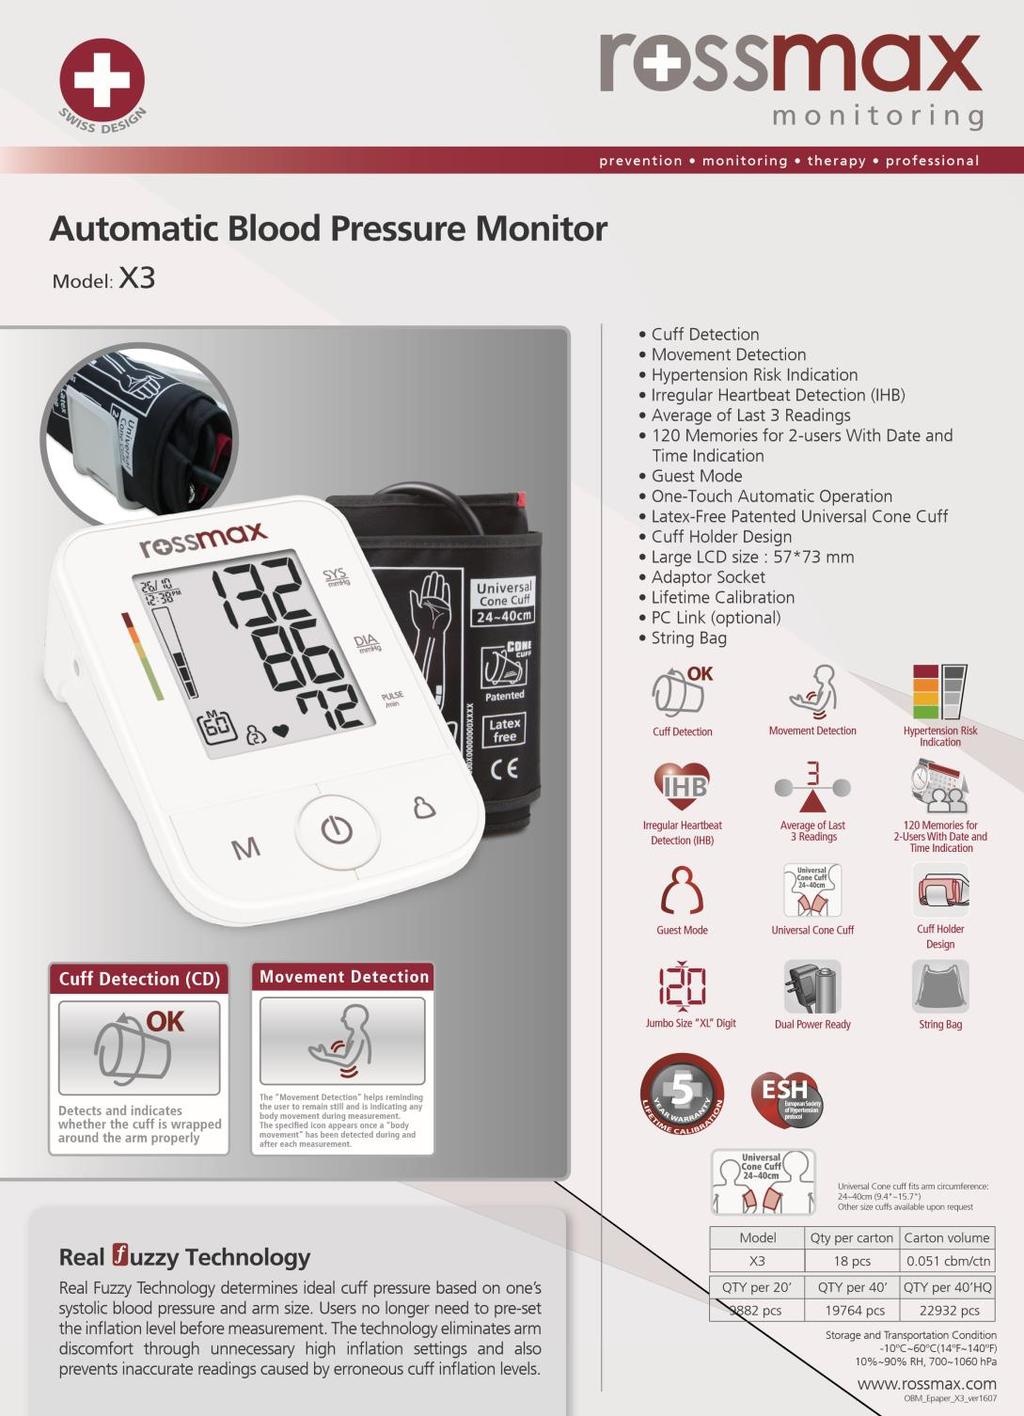 ПРОДУКТИ НА ROSSMAX 3 Автоматичен апарат за кръвно налягане X3 Отчитане на движение Отчитане на маншета Индикация за риск